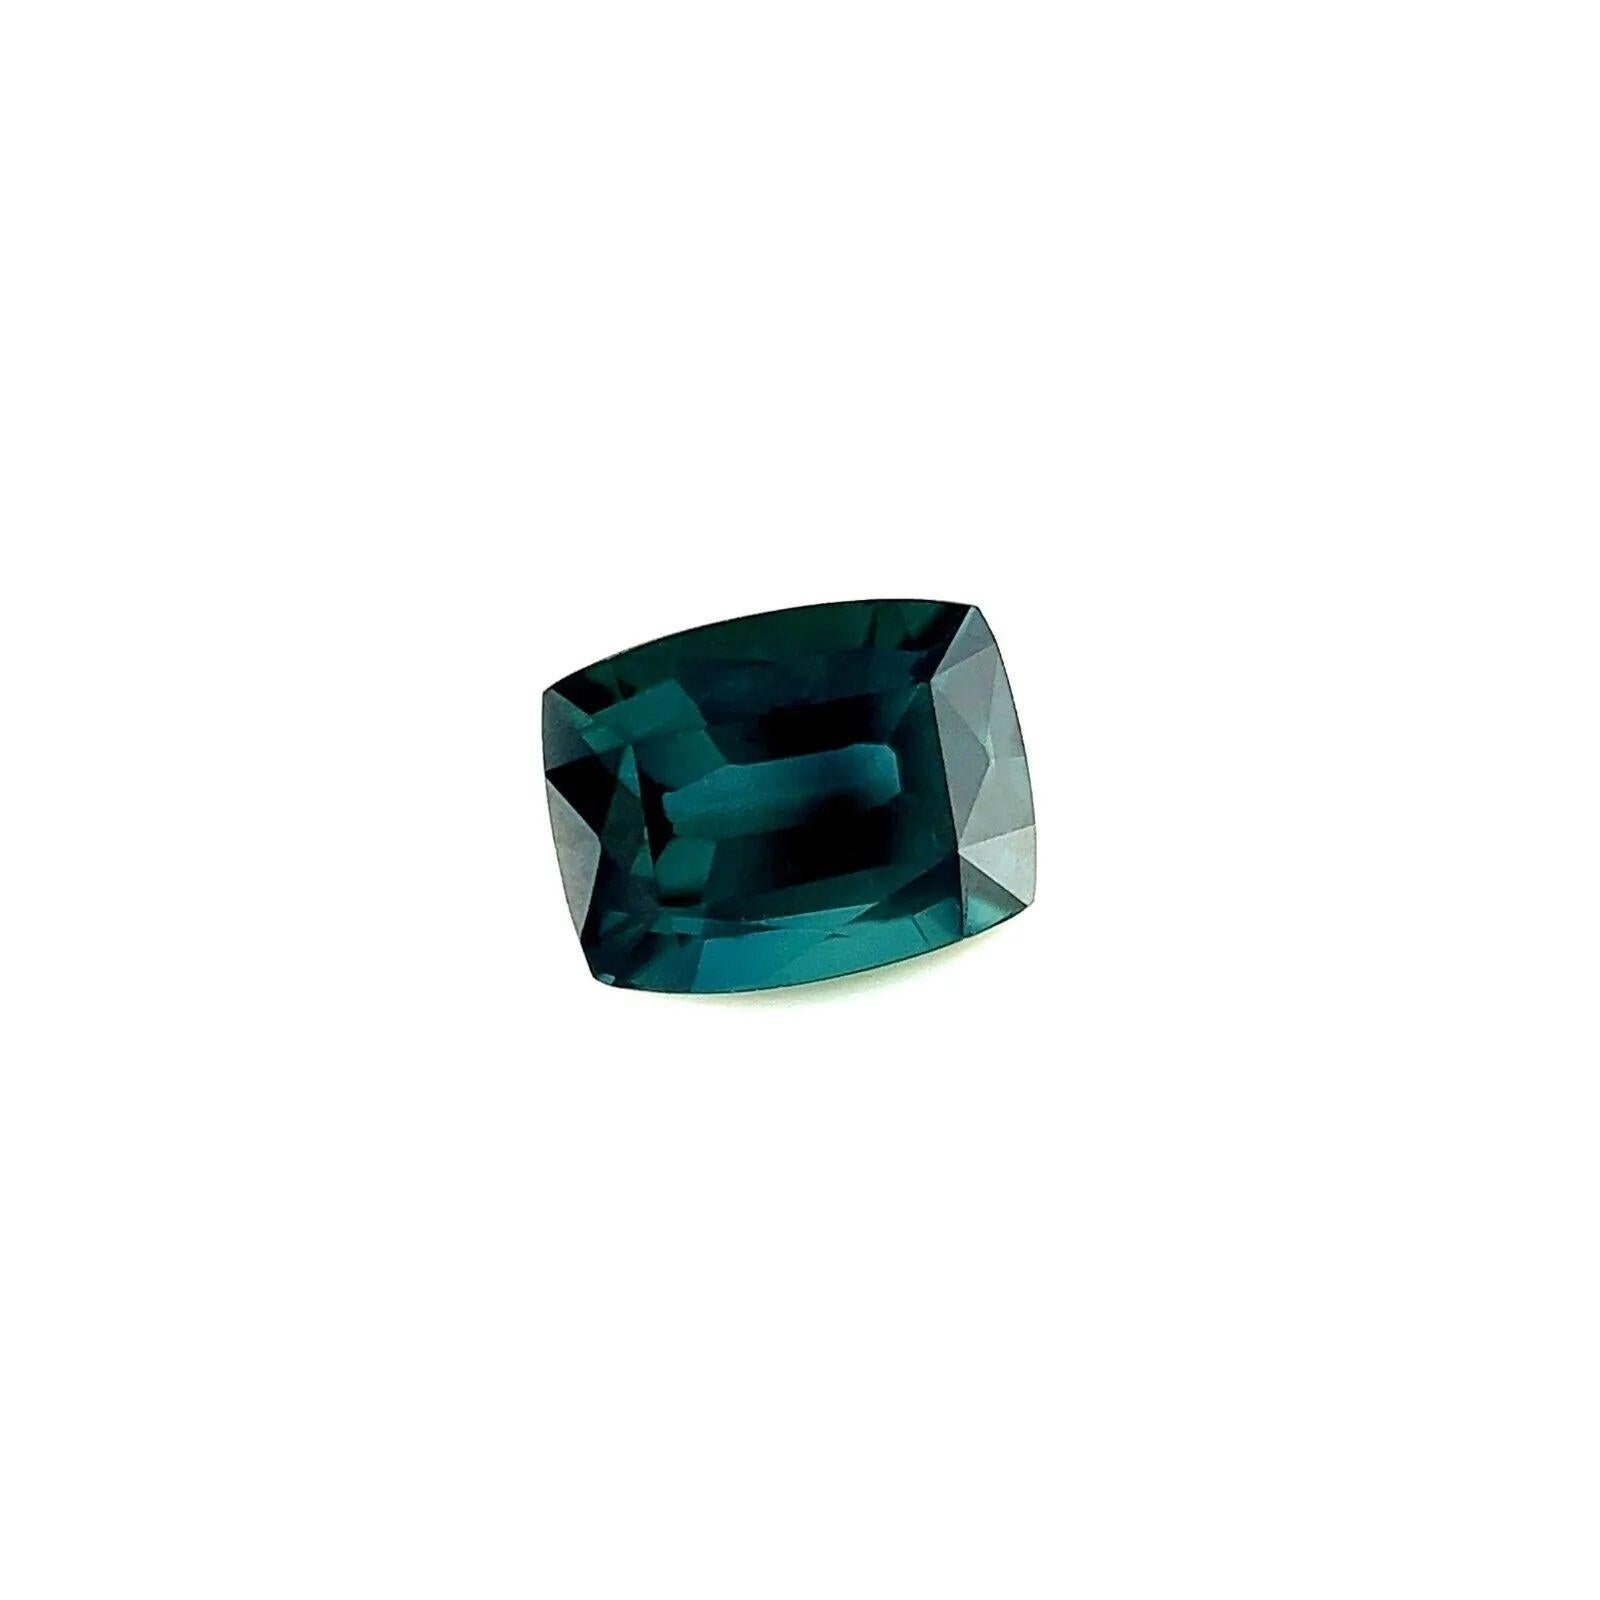 GRA zertifiziert 1,04ct Grüner Blauer Saphir Seltener Kissenschliff Edelstein 6,4x5mm VVS

GRA Certified Green Blue Sapphire Edelstein.
1,04 Karat Saphir mit einer schönen tief grünlich-blauen Farbe.
Vollständig von der GRA zertifiziert, die